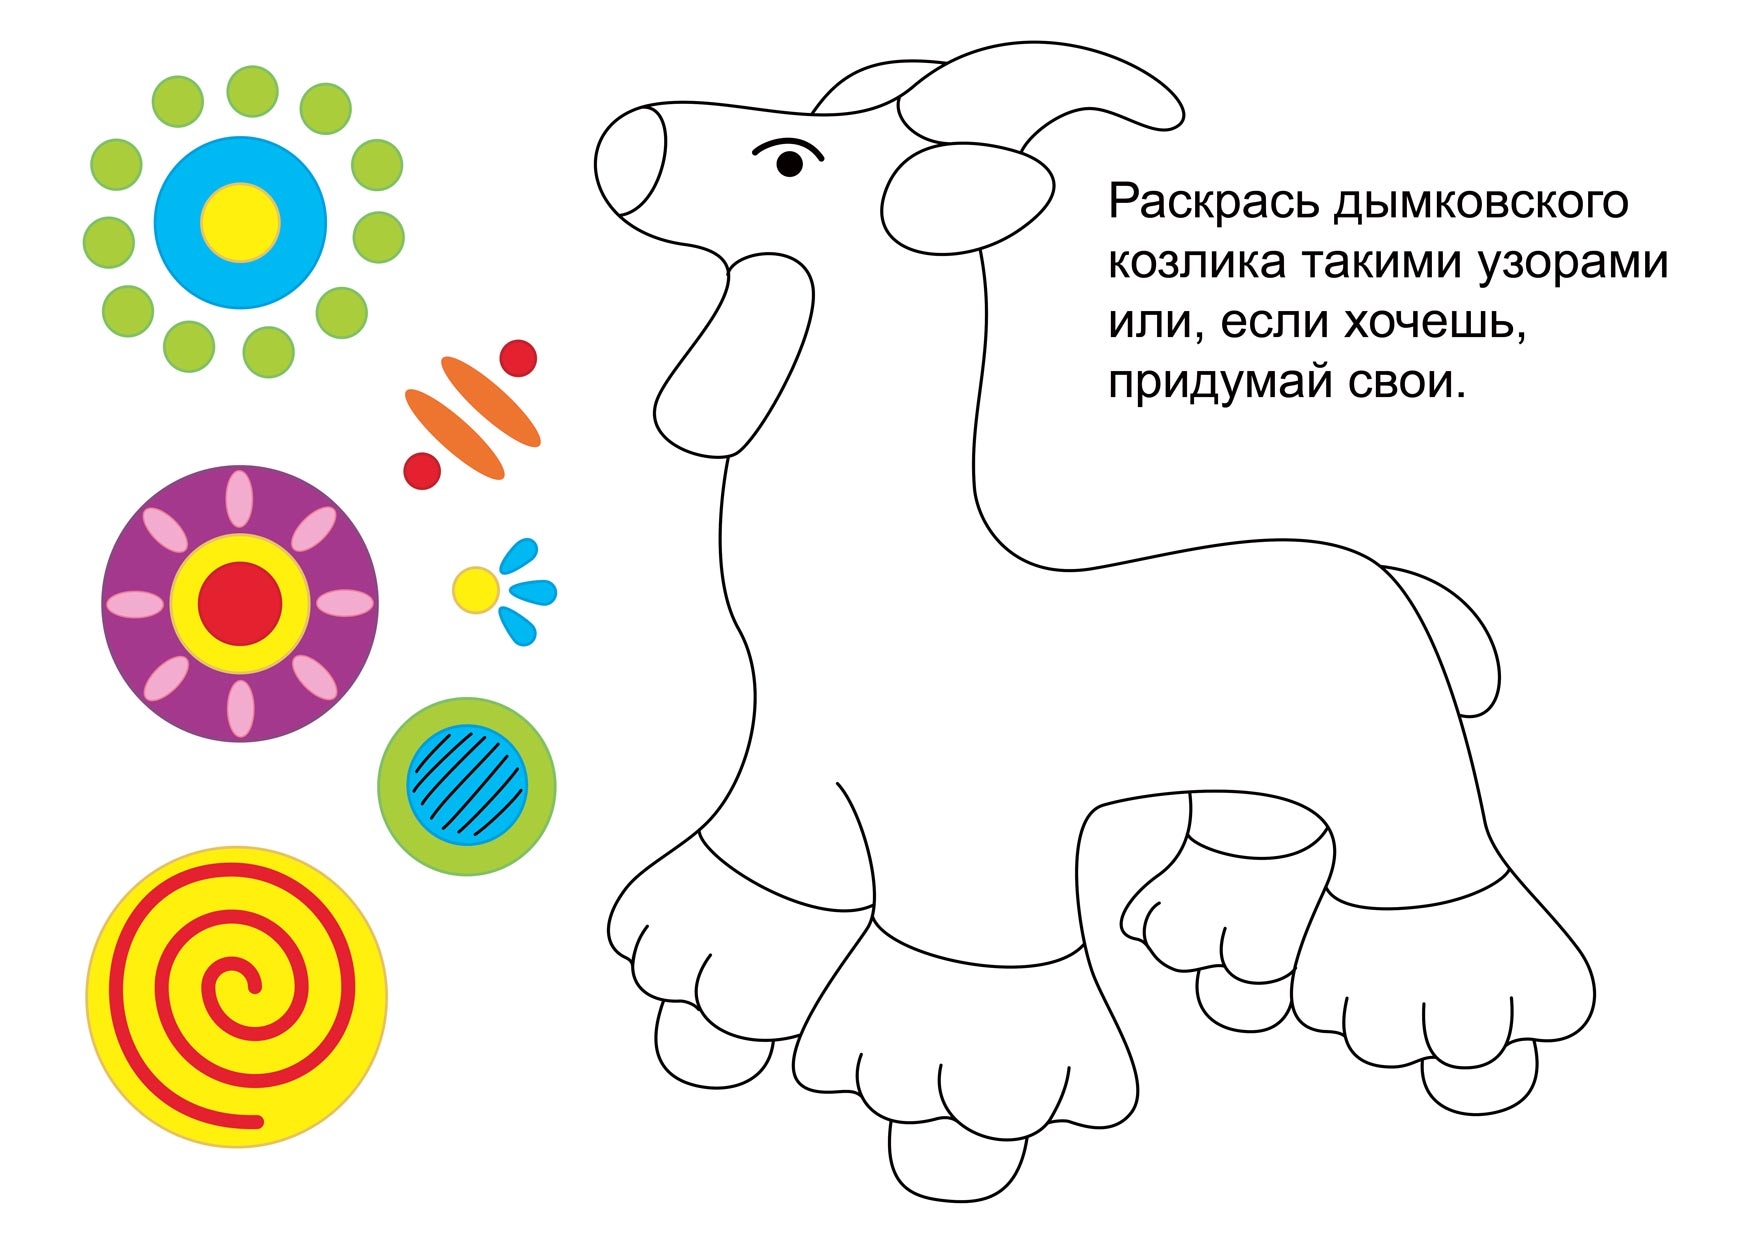 Дымковская игрушка козлик раскраска для детей